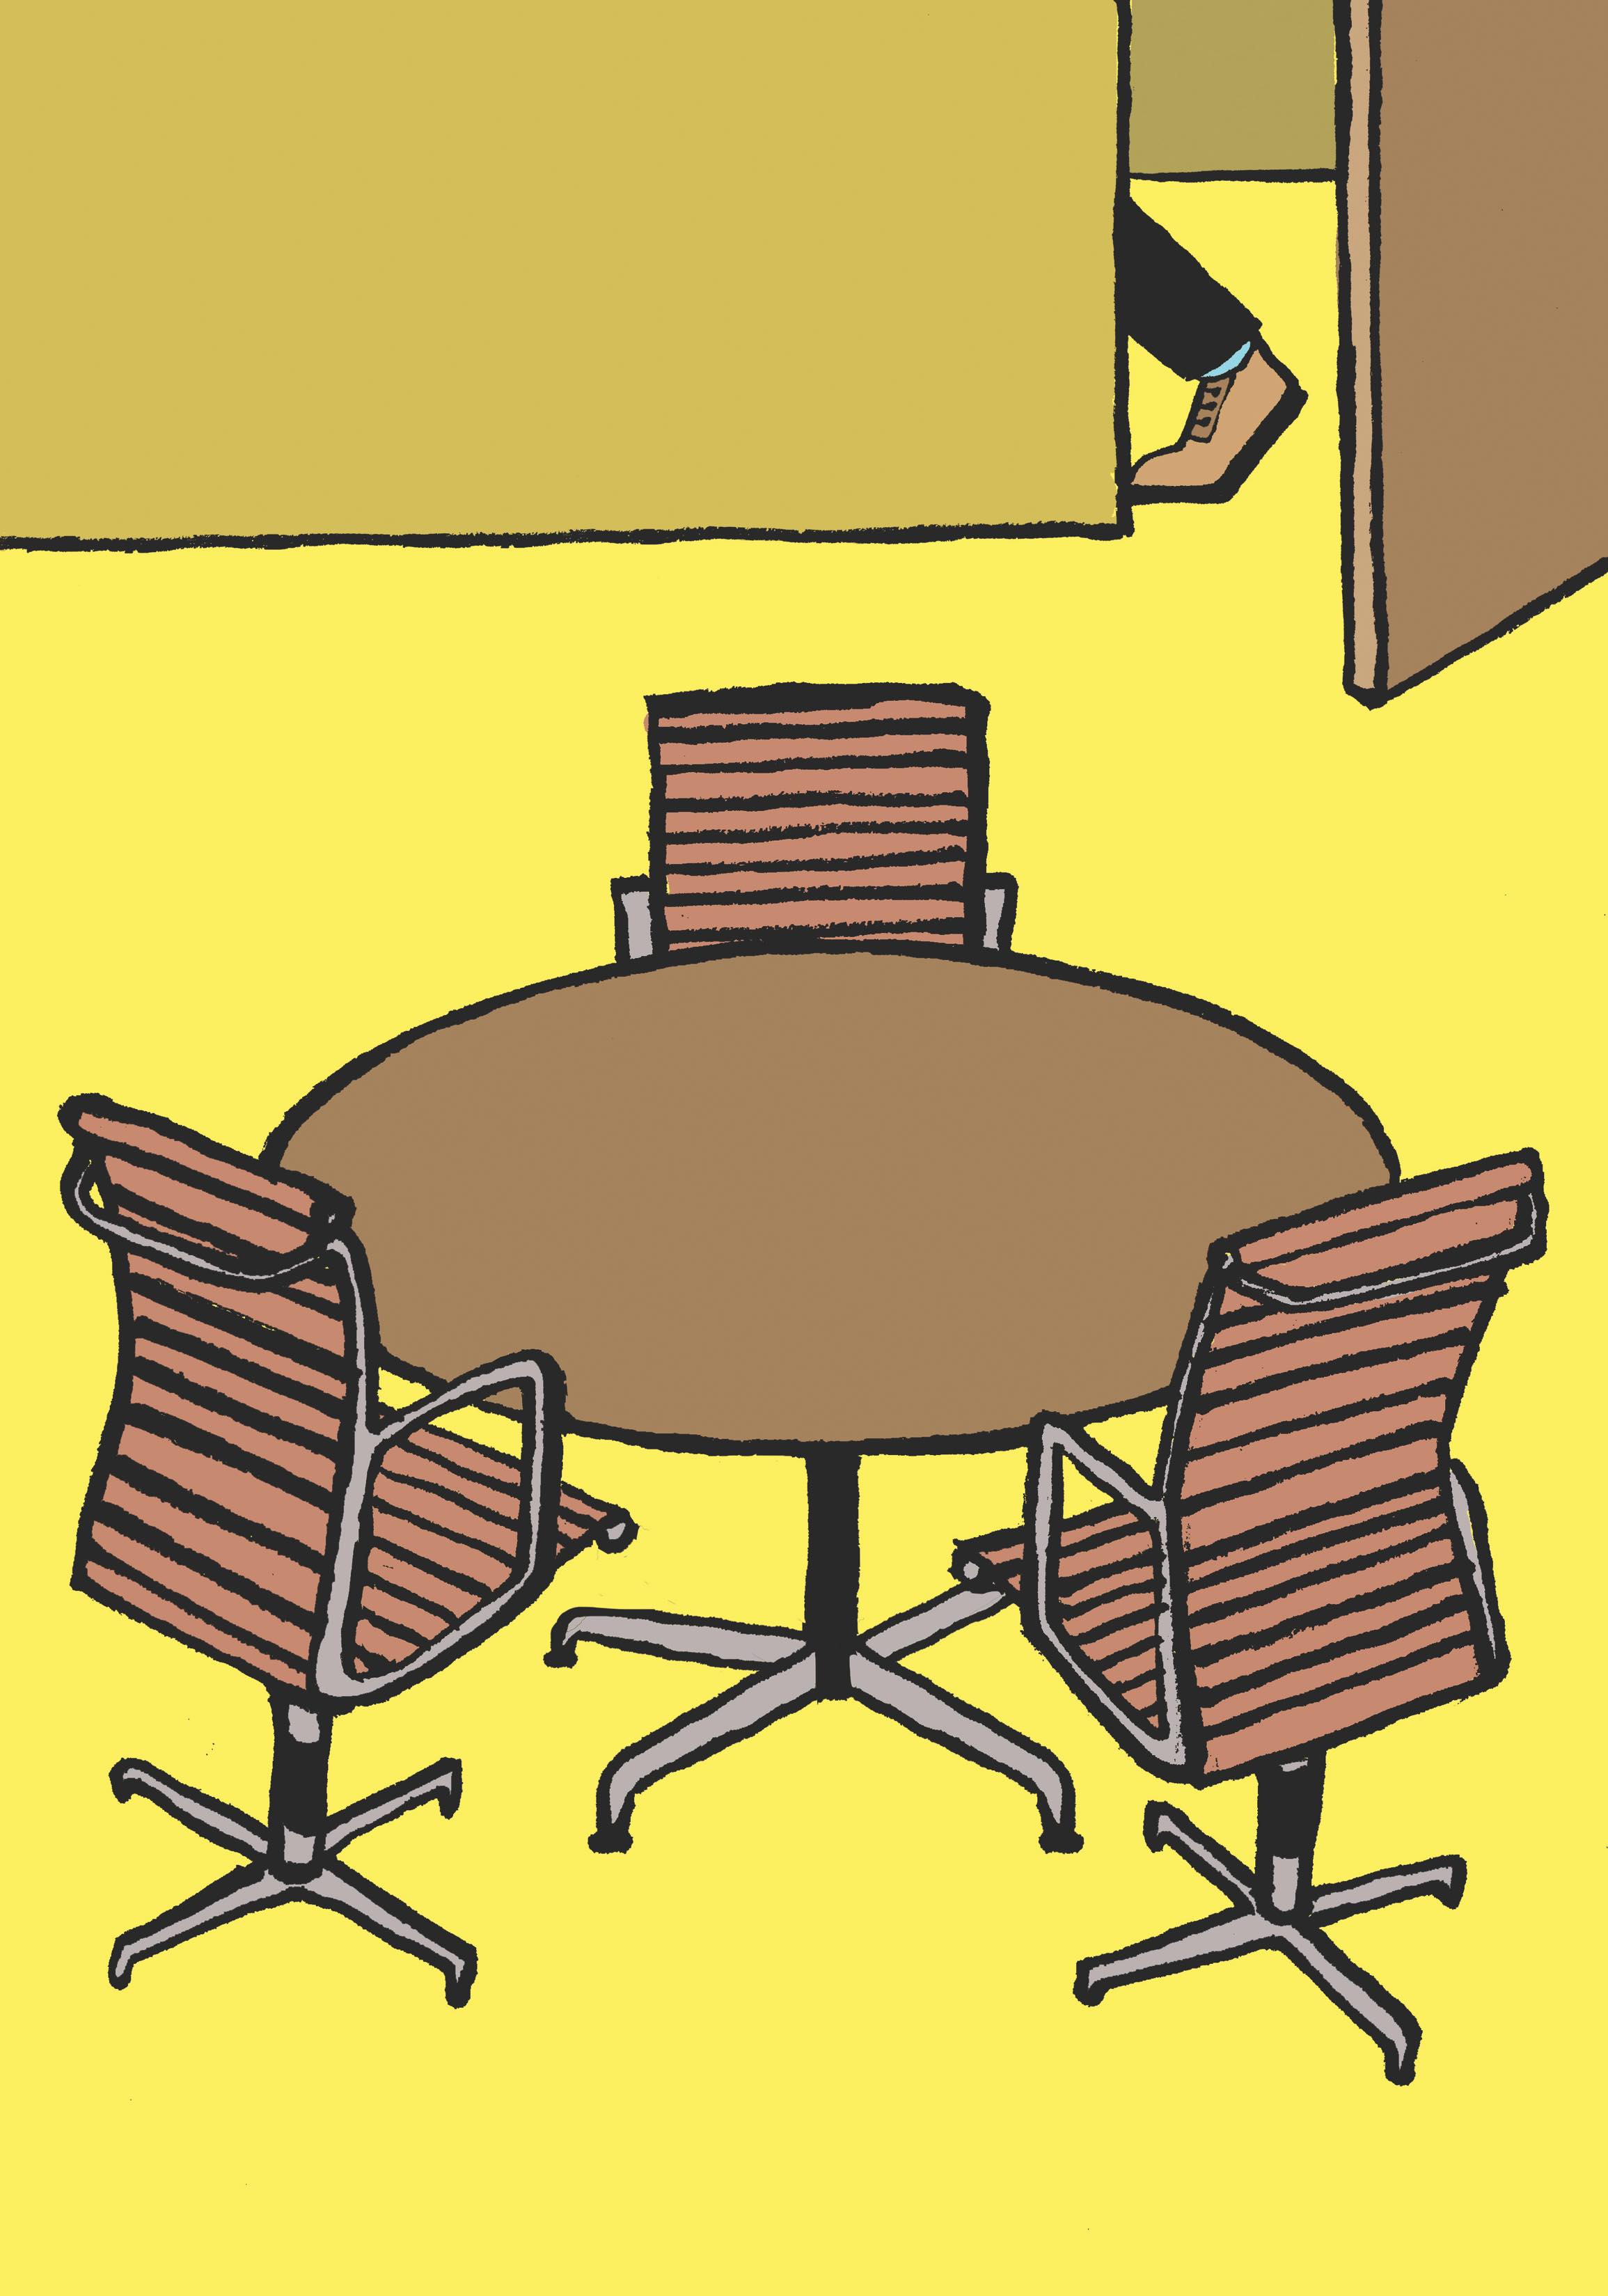 Eine Karikatur von drei Stühlen, die um einen runden Tisch in einem ansonsten leeren Sitzungsplatz aufgestellt werden.